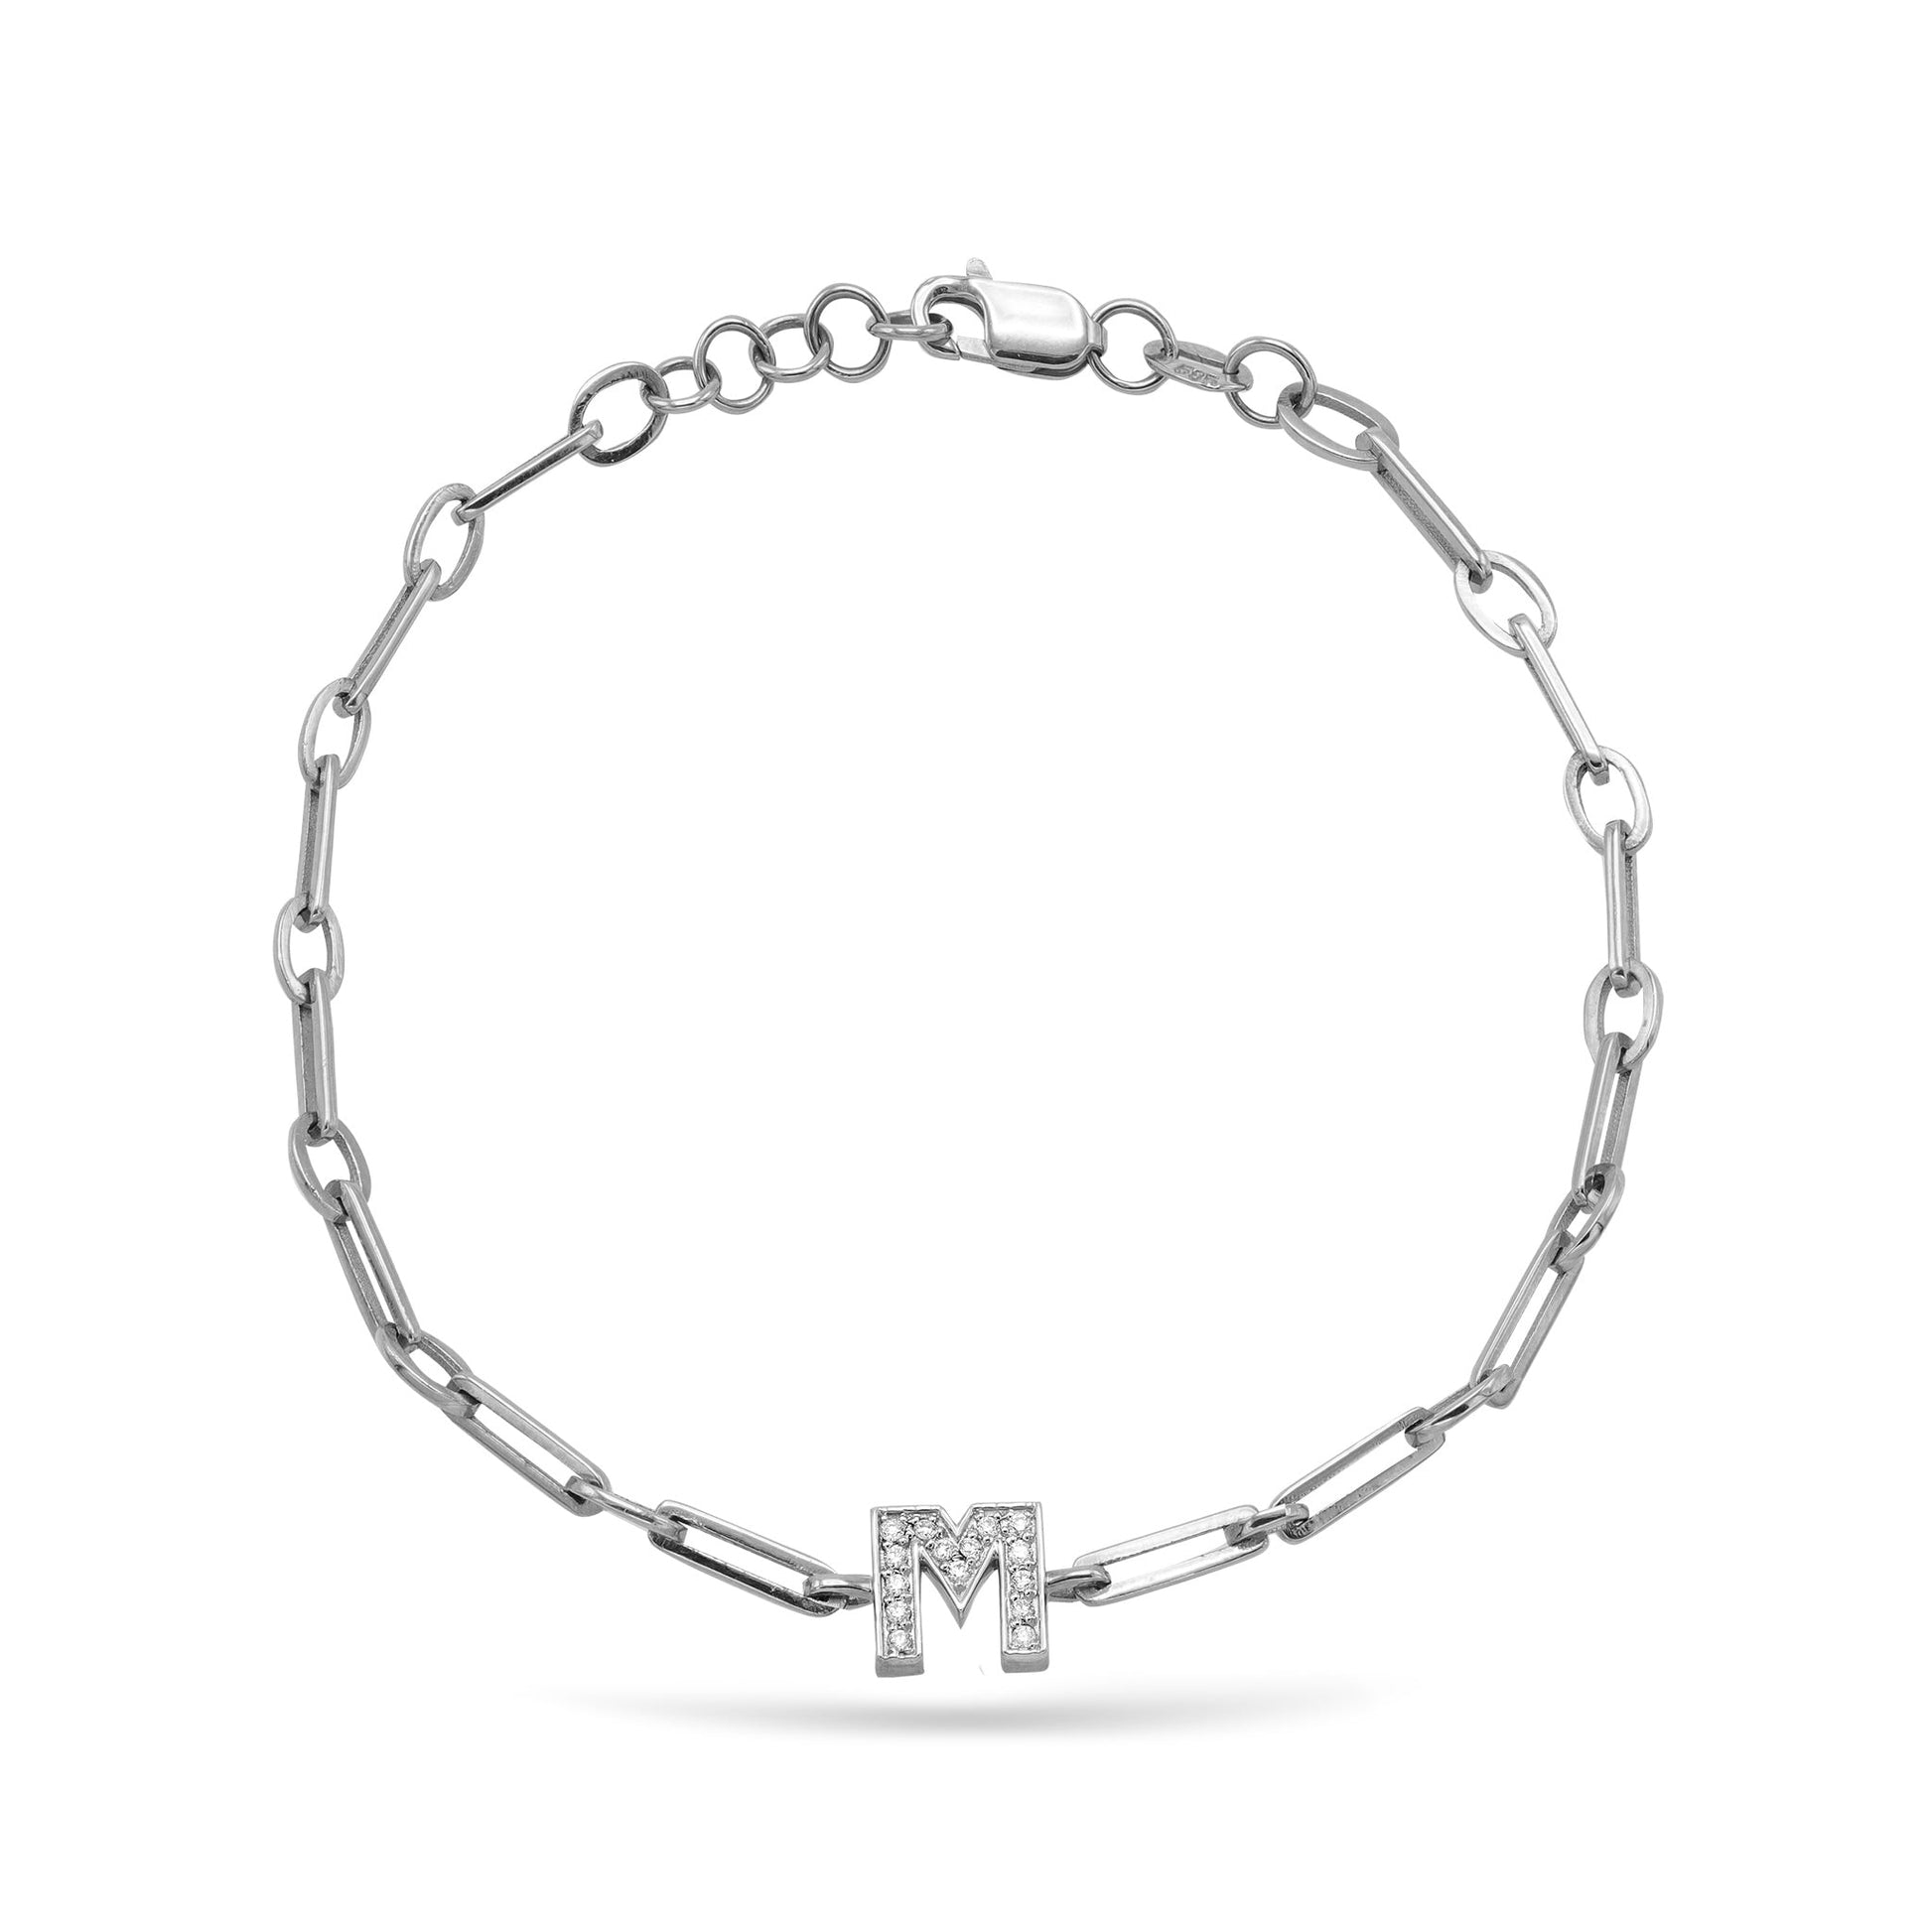 Jewelry Initials | Diamond Bracelet | 14K Gold - White / 18 Cm: 0.07 Cts. | Round Cut / A - bracelet Zengoda Shop